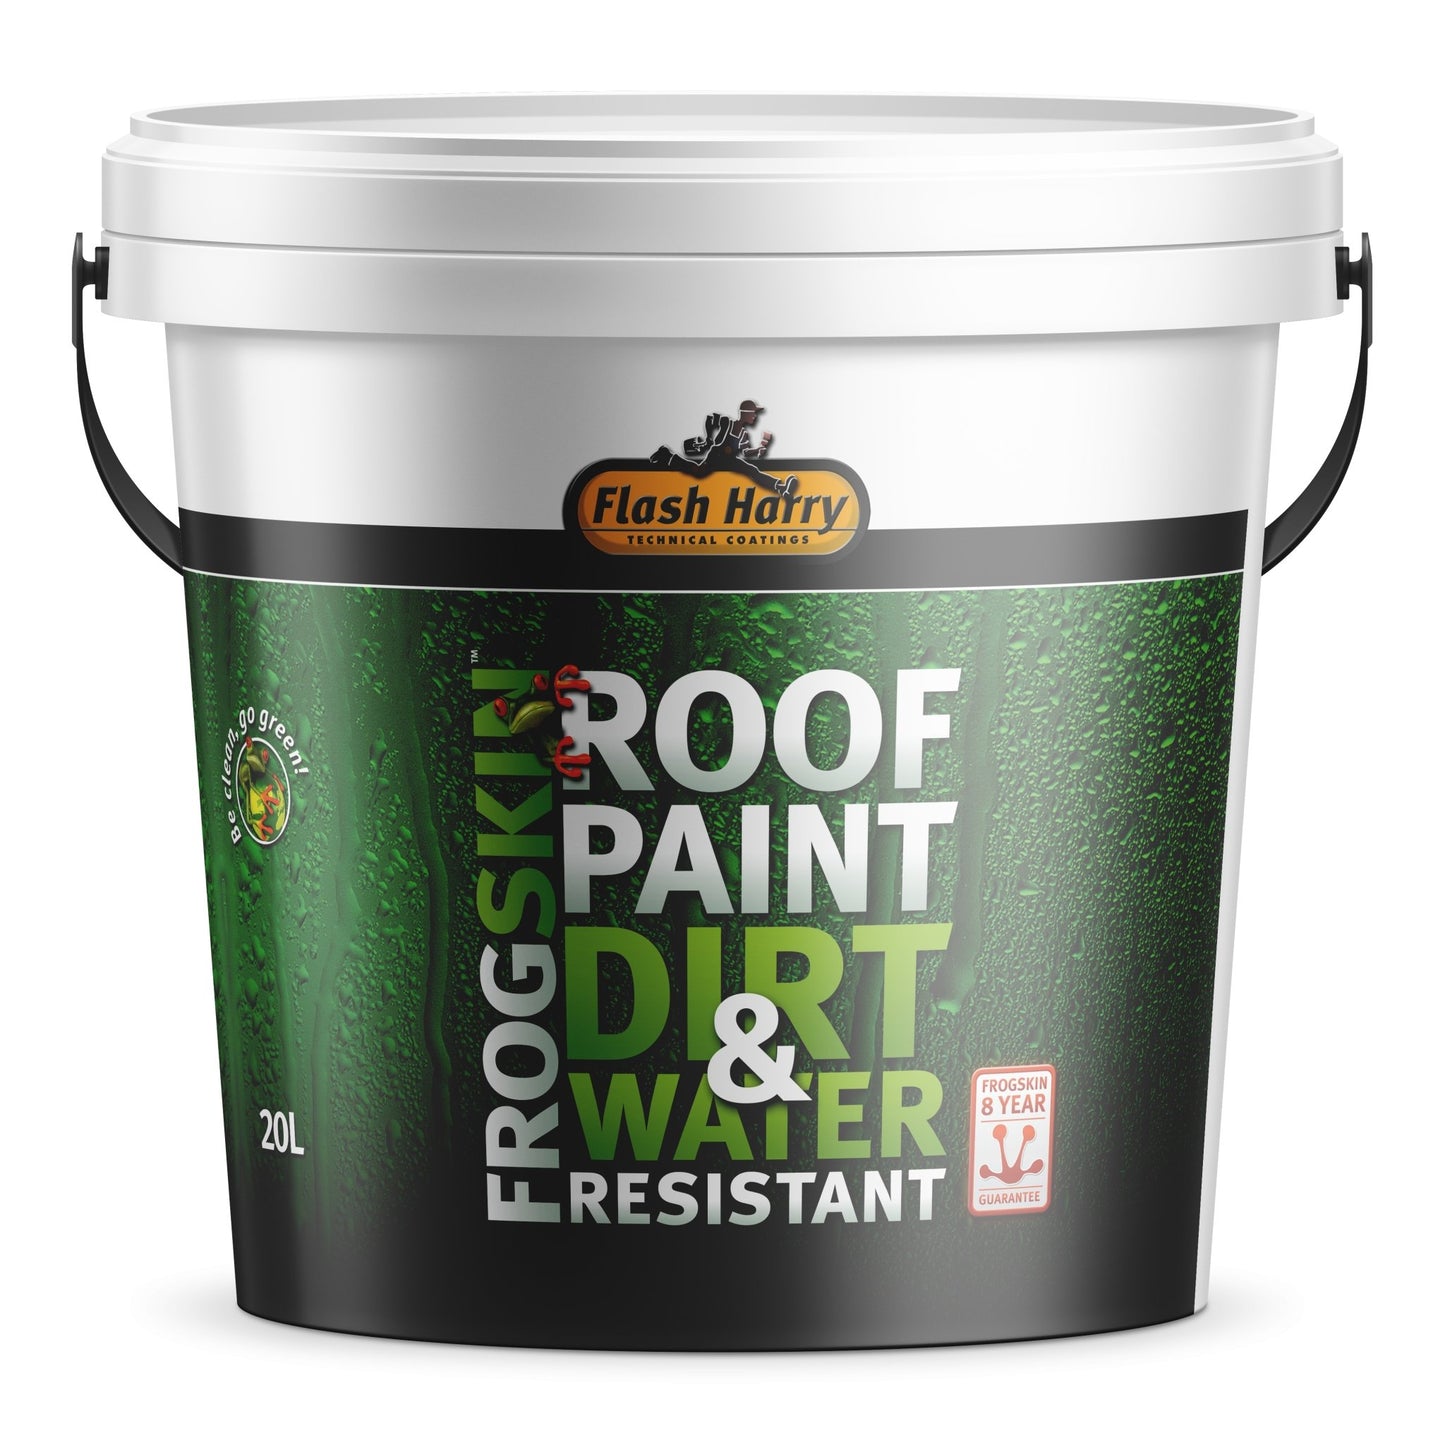 Flash Harry Roof Paint 20l - Al's Hardware